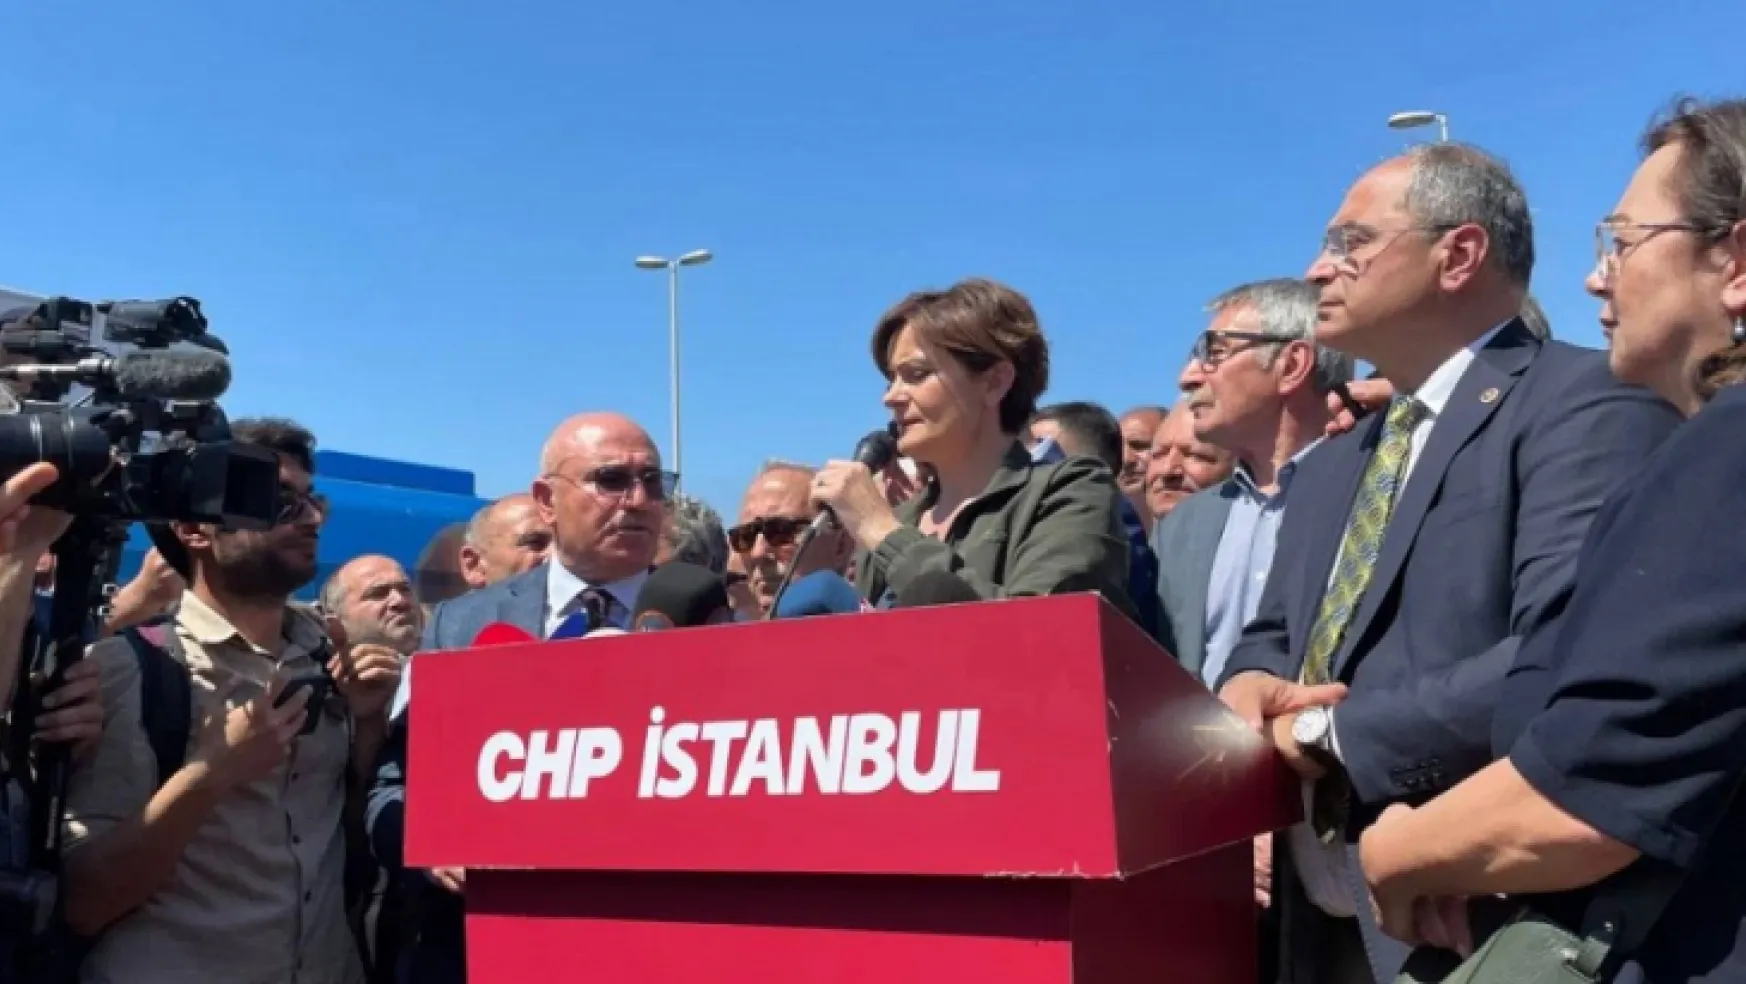 CHP'den Atatürk Havaalanı'nda eylem!